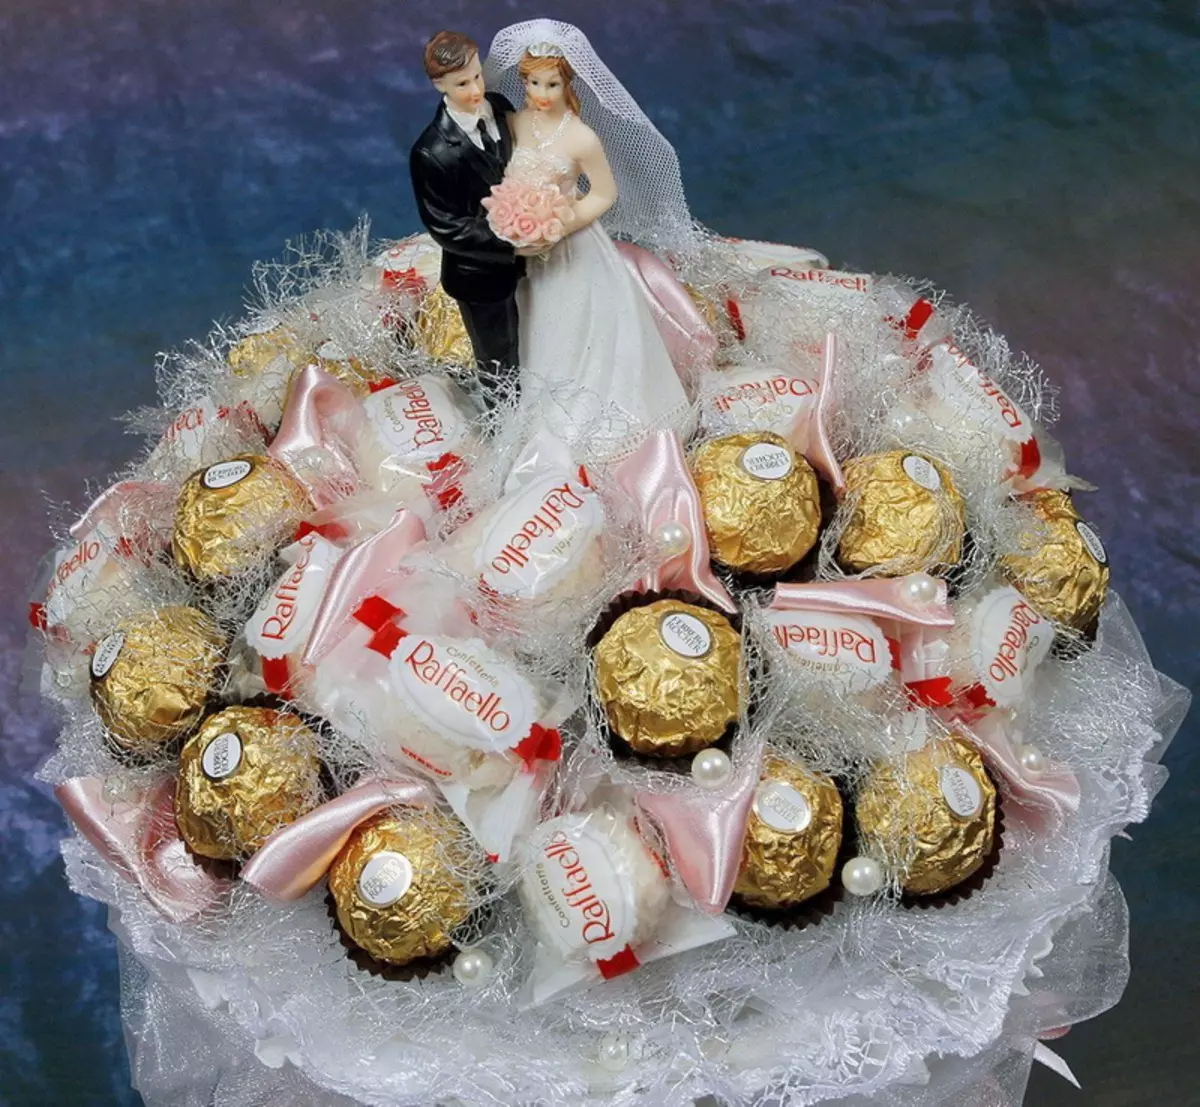 باقة الزفاف بأيديهم (65 صورة): كيفية صنع باقة زفاف من الورود بوش، المال والفواكه نفسها خطوة بخطوة؟ 8020_51